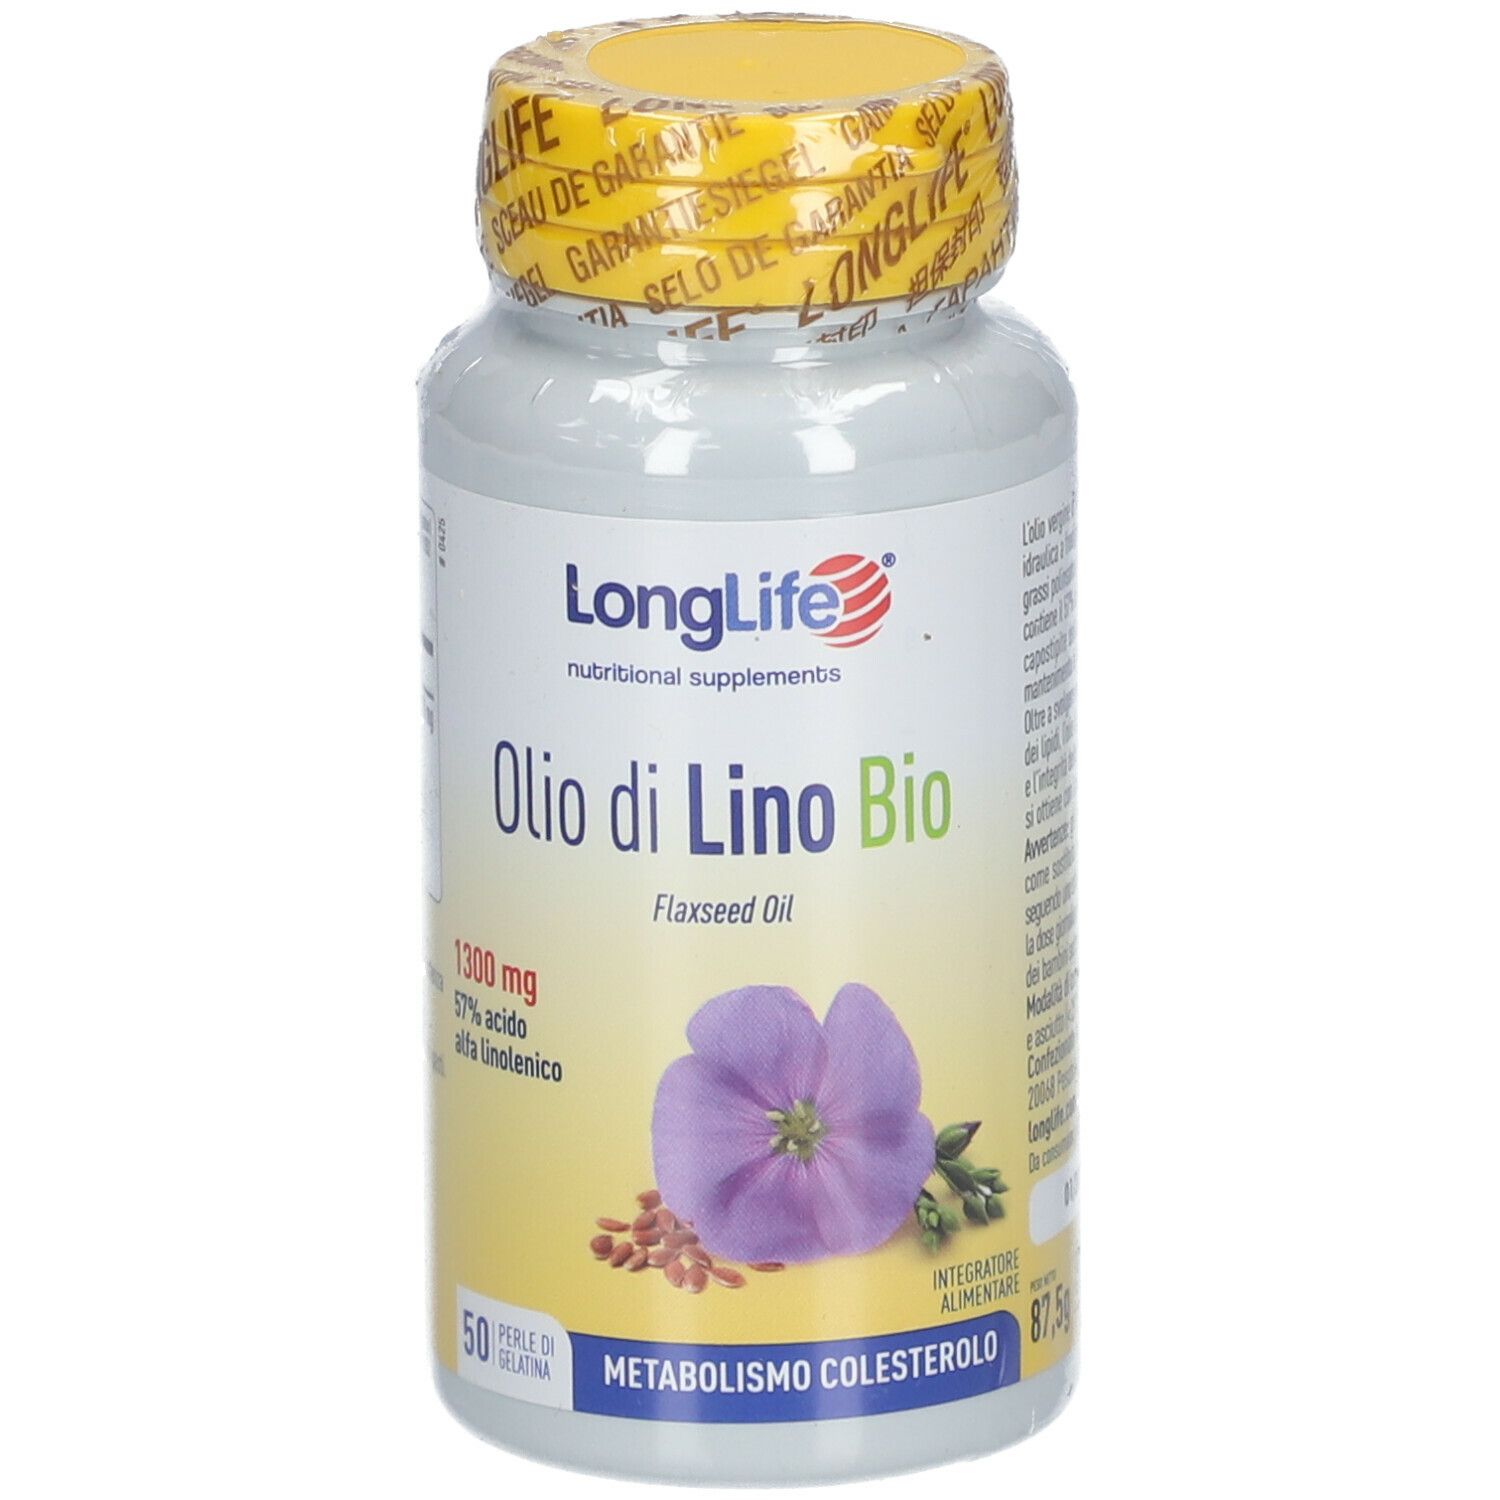 LongLife® Olio di Lino Bio 1300mg